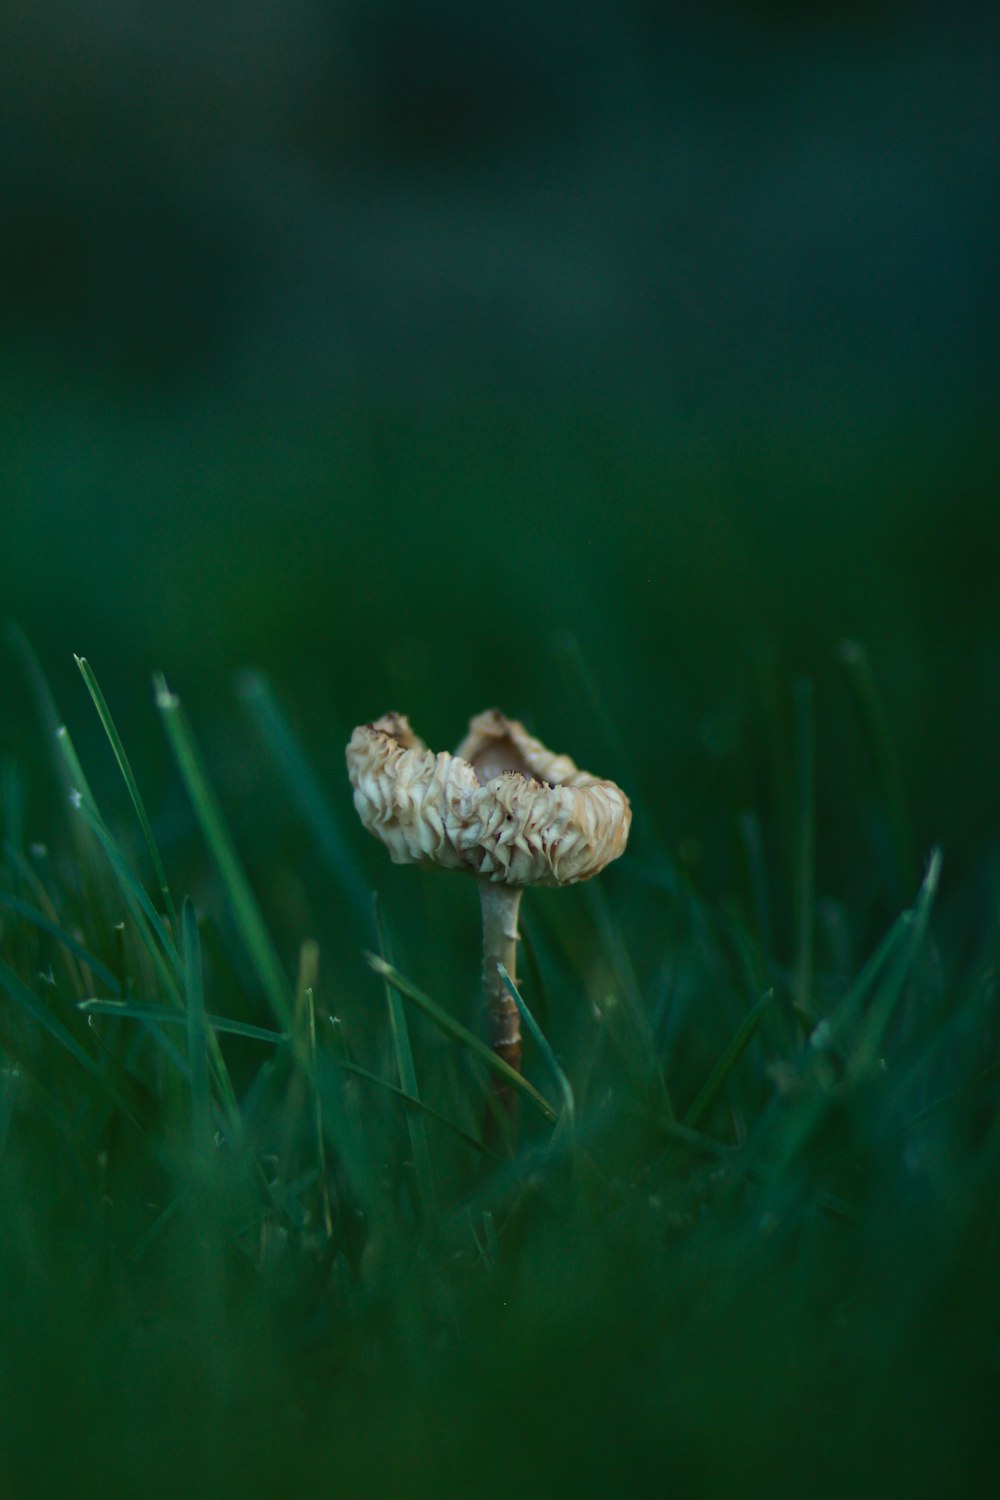 Photographie à mise au point superficielle d’un champignon blanc